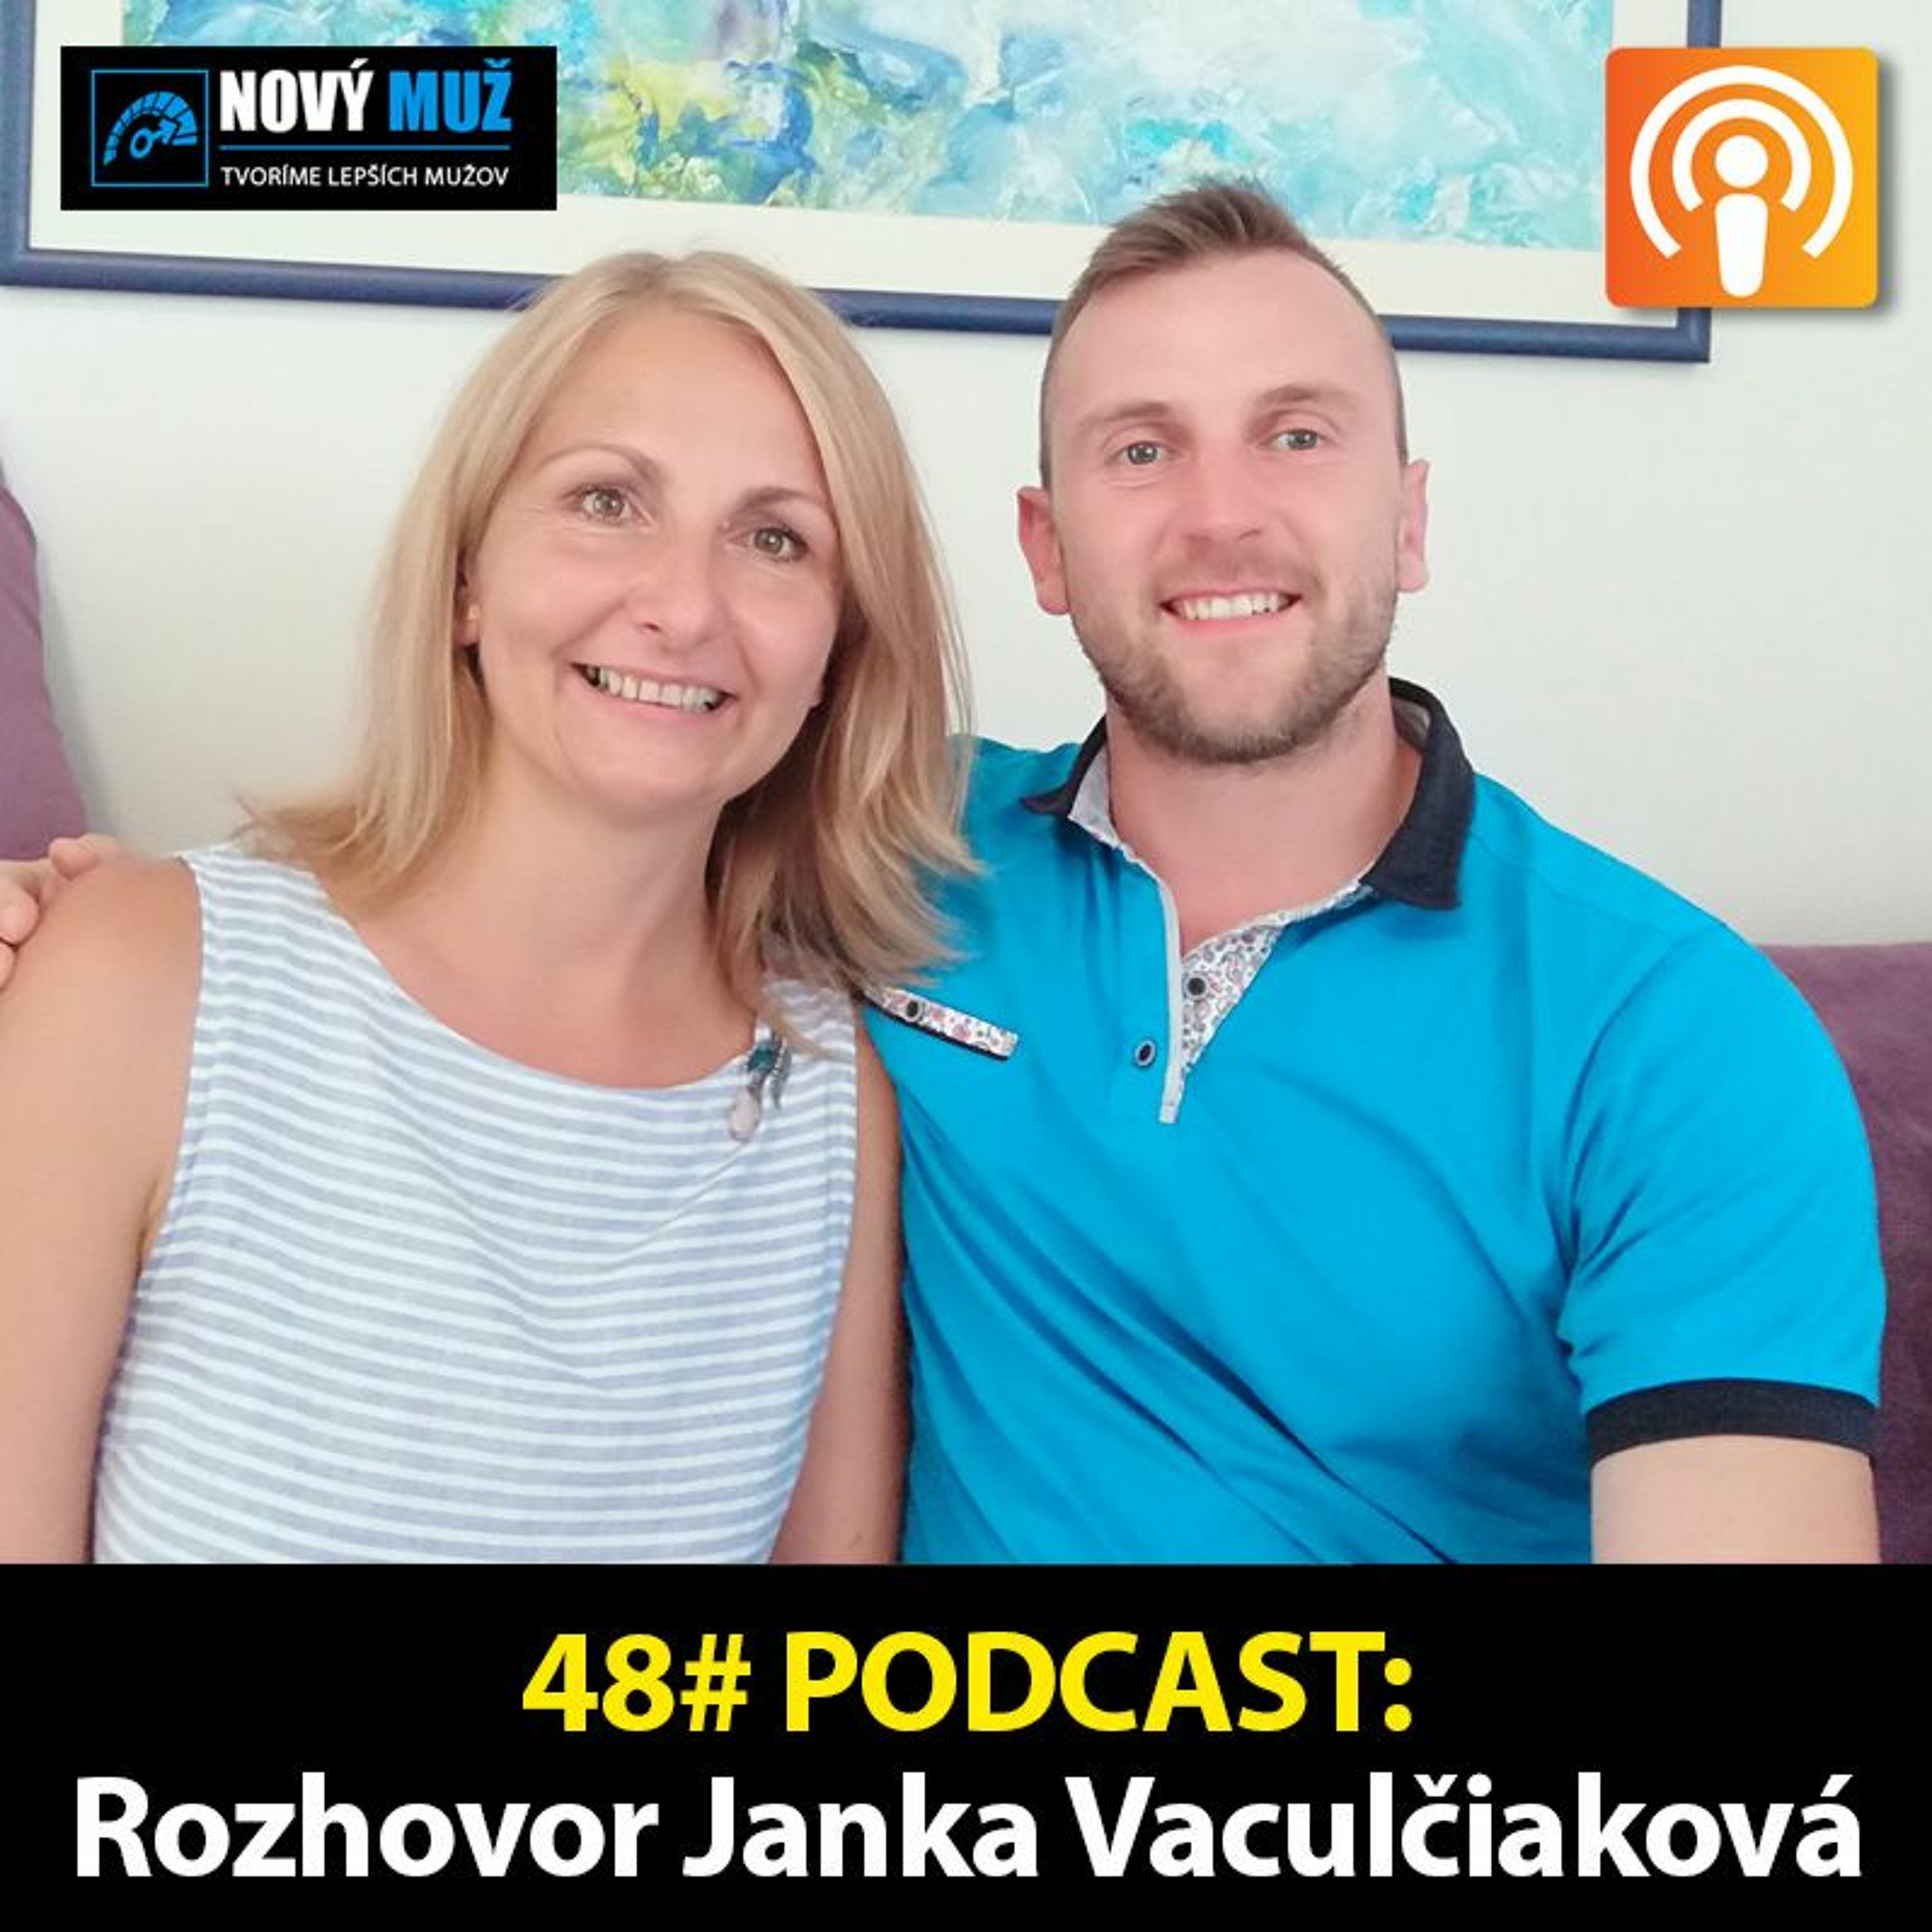 48#PODCAST - Rozhovor Janka Vaculčiaková - Čo potrebujú ženy vo vzťahoch